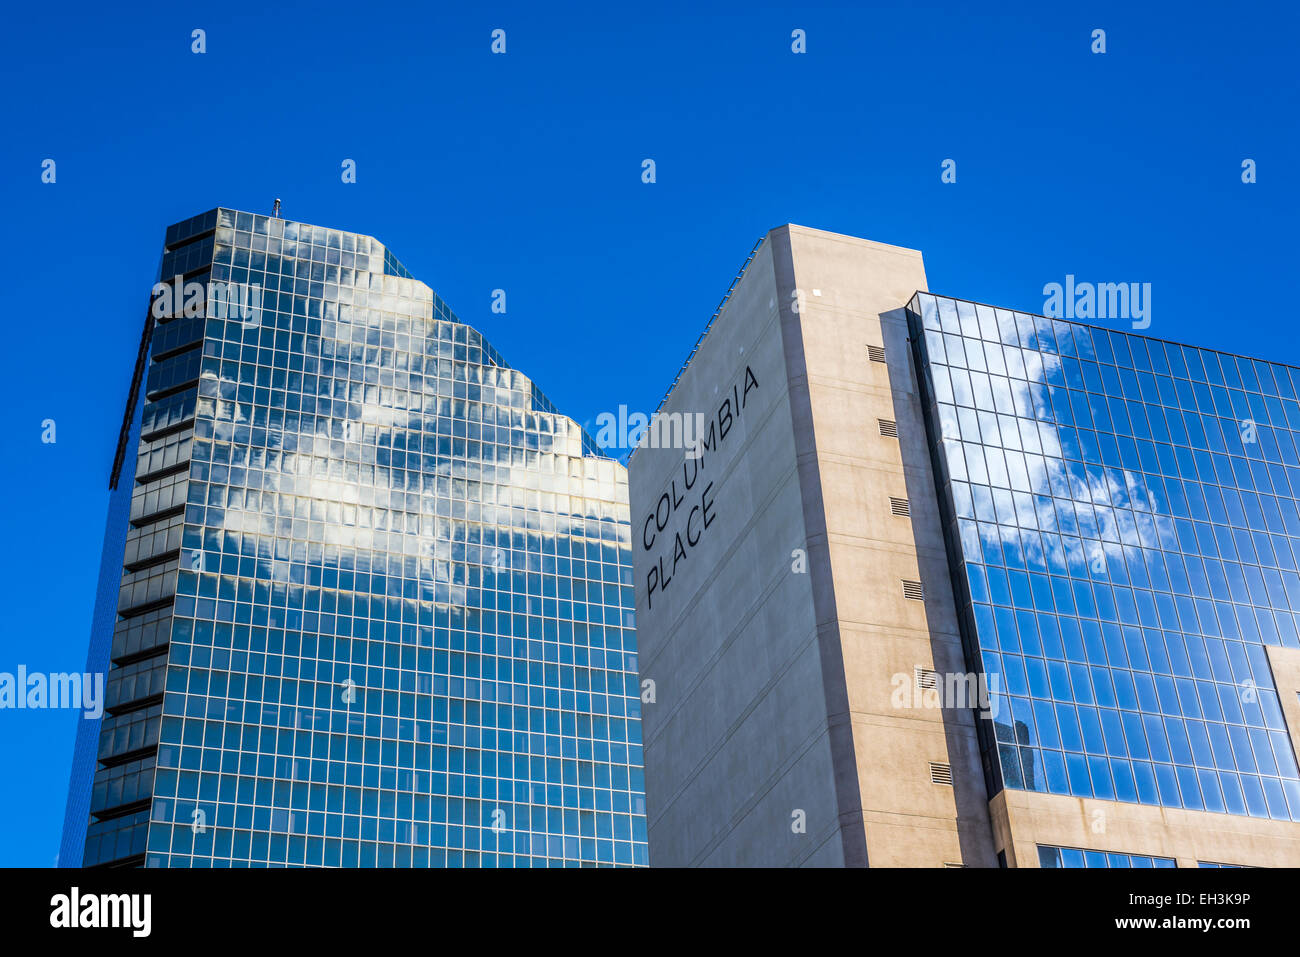 Wolken reflektieren in Windows. Gebäude befindet sich in Downtown San Diego, California, Vereinigte Staaten von Amerika. Stockfoto